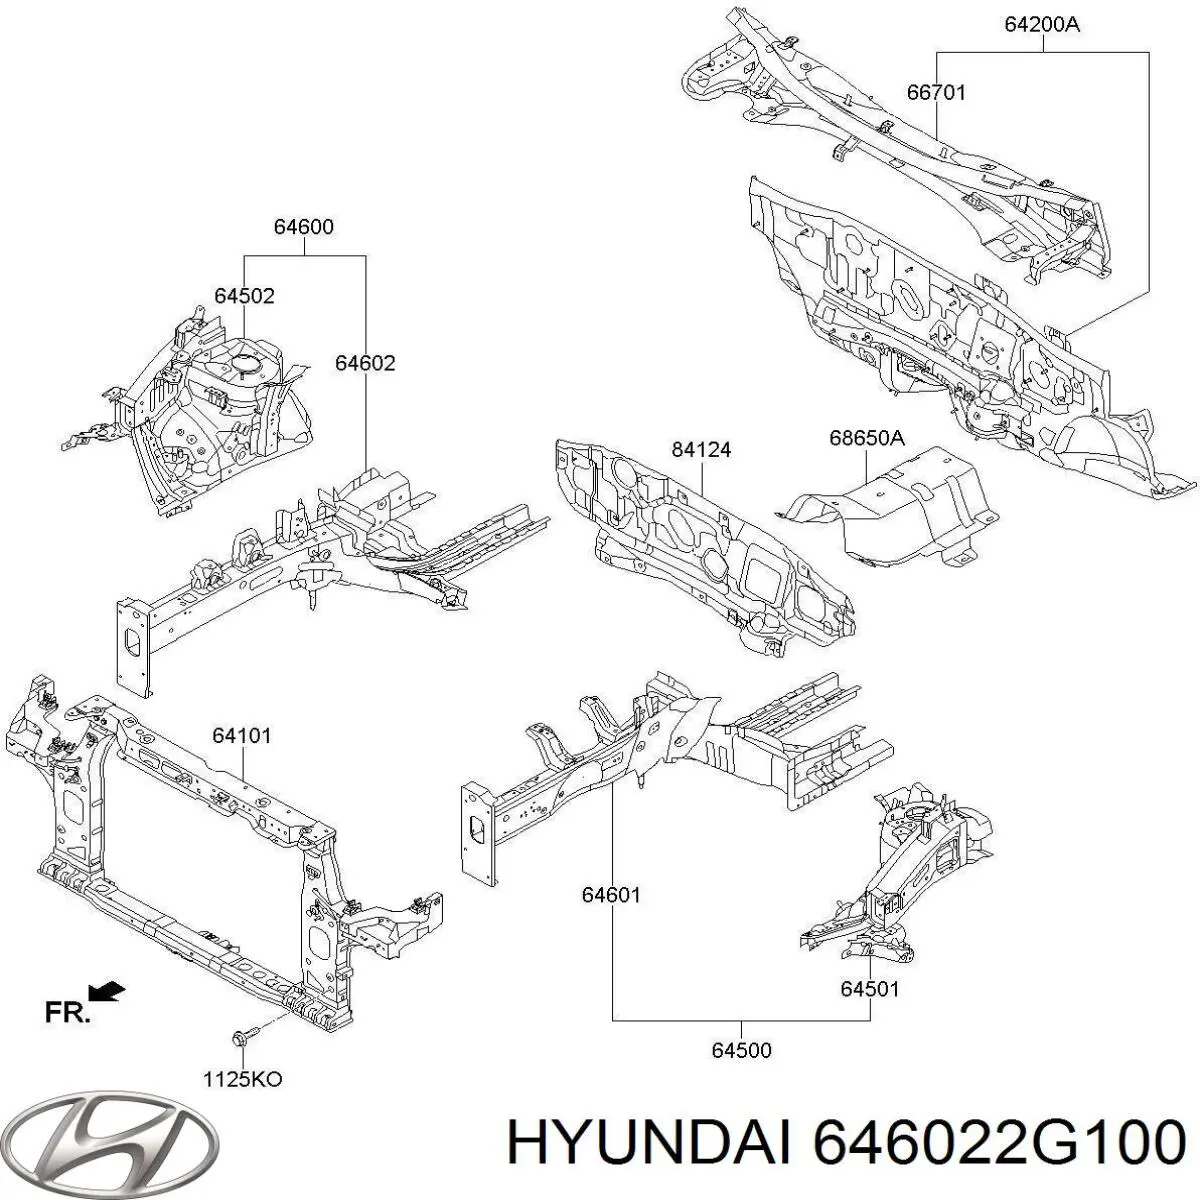 646022G100 Hyundai/Kia larguero delantero derecho